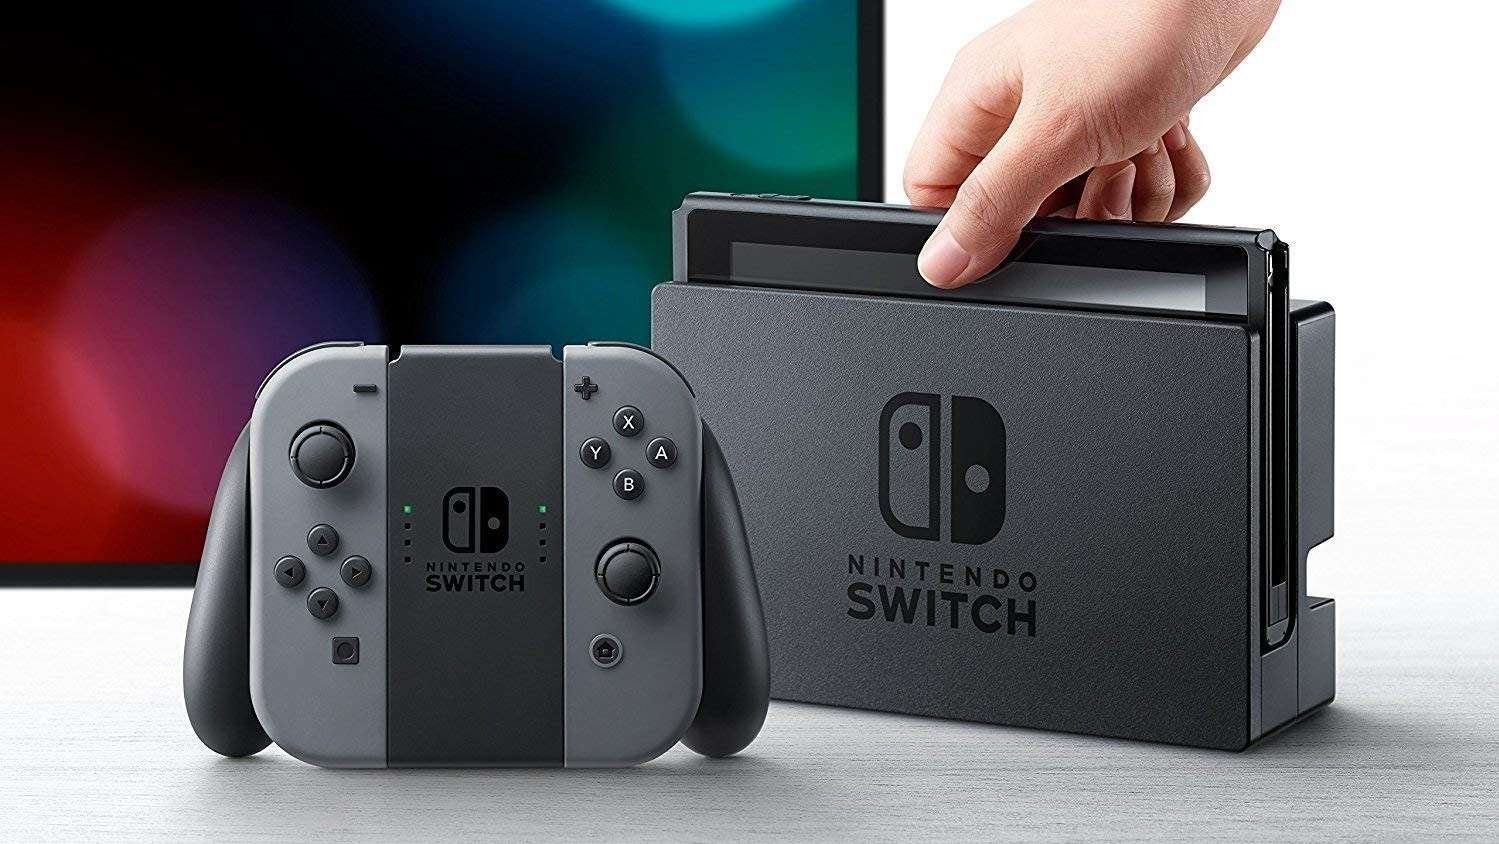 وصول مبيعات جهاز Nintendo Switch الى أكثر من 84.5 مليون وحدة في جميع أنحاء العالم